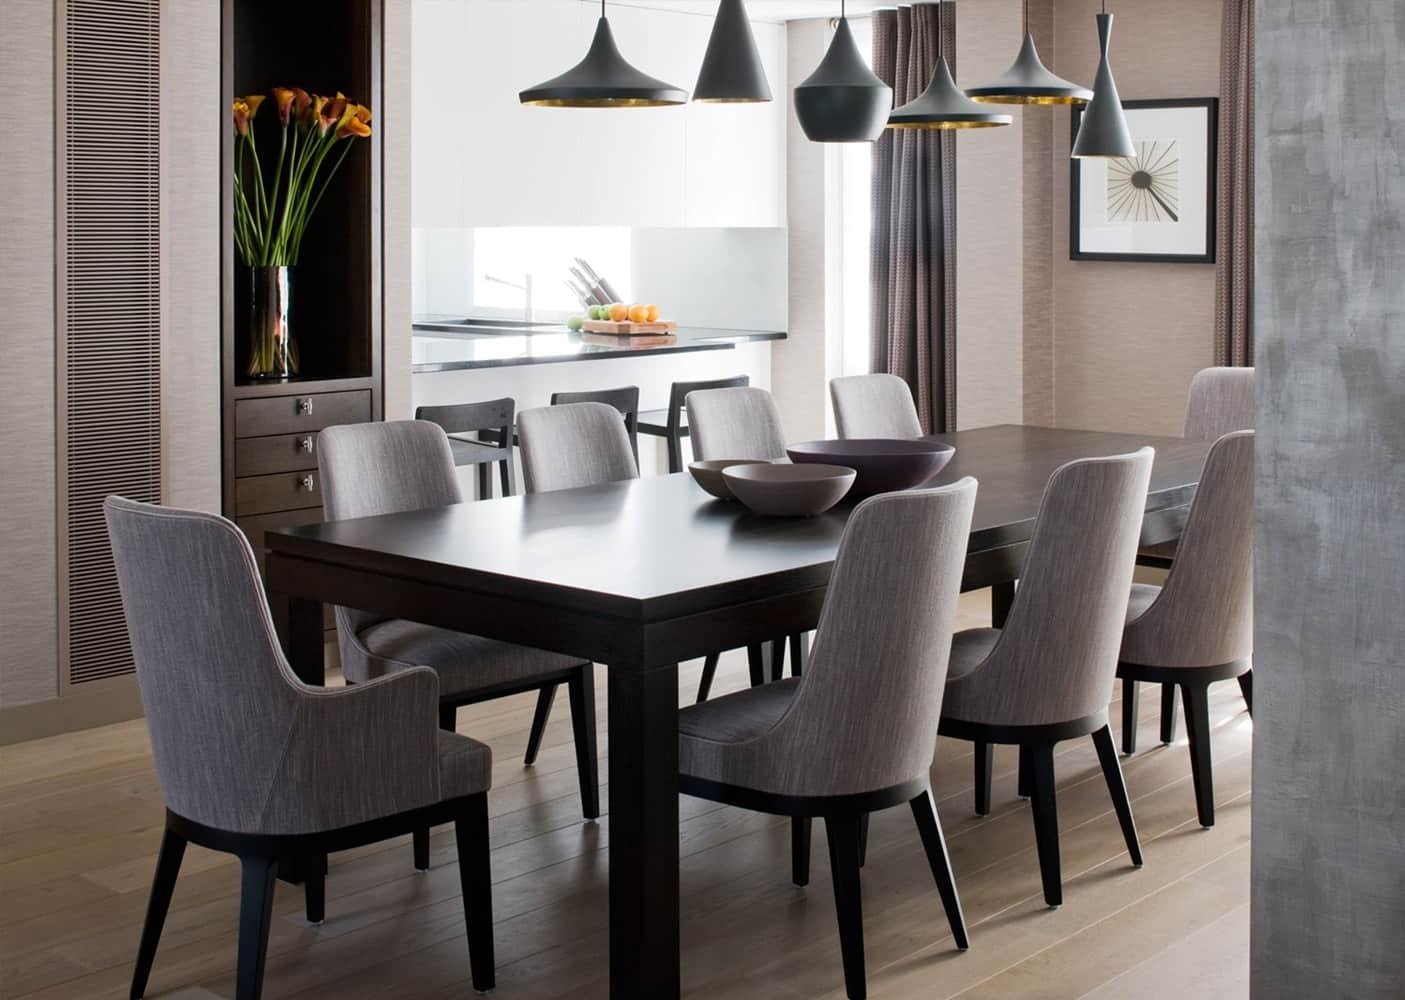 Дизайн кухонного стола. Стулья Lisette Grey Dining. Кухонный стол в интерьере. Стулья для кухни в стиле Контемпорари. Интерьер обеденной зоны.